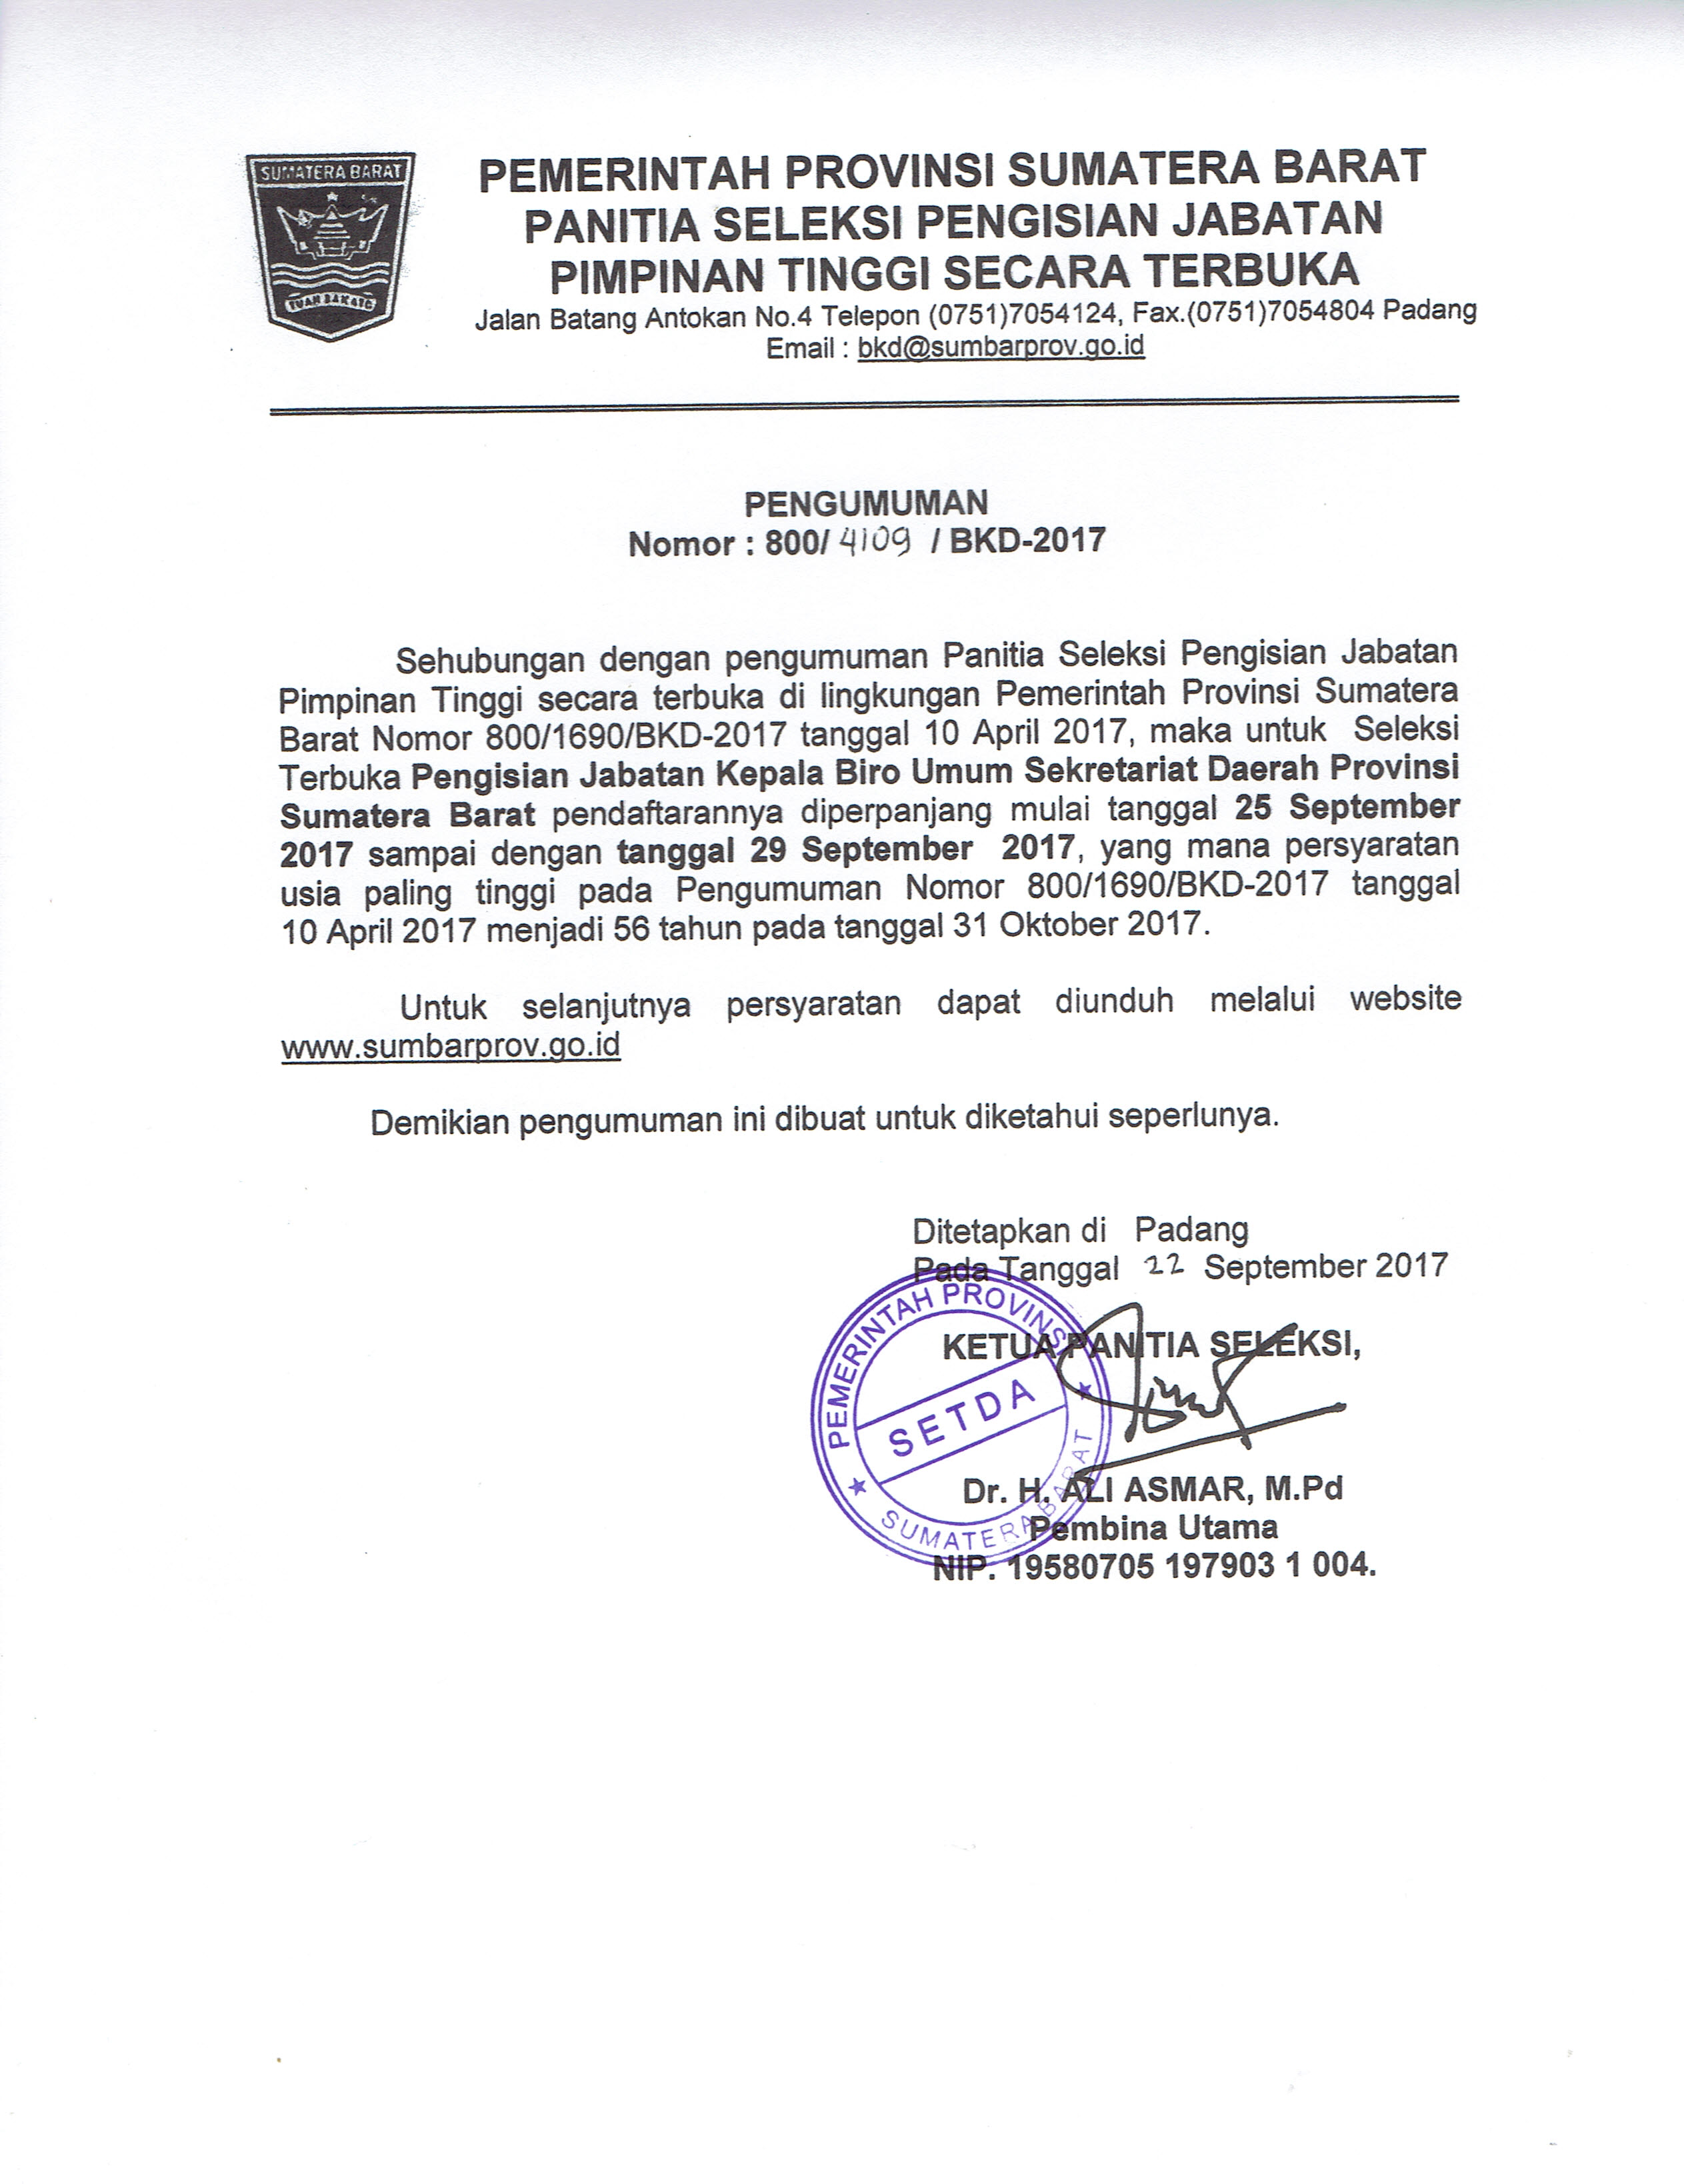 Pengumuman Perpanjangan Pendaftaran Seleksi Terbuka Pengisian Jabatan Kepala Biro Umum Sekretariat Daerah Prov. Sumatera Barat